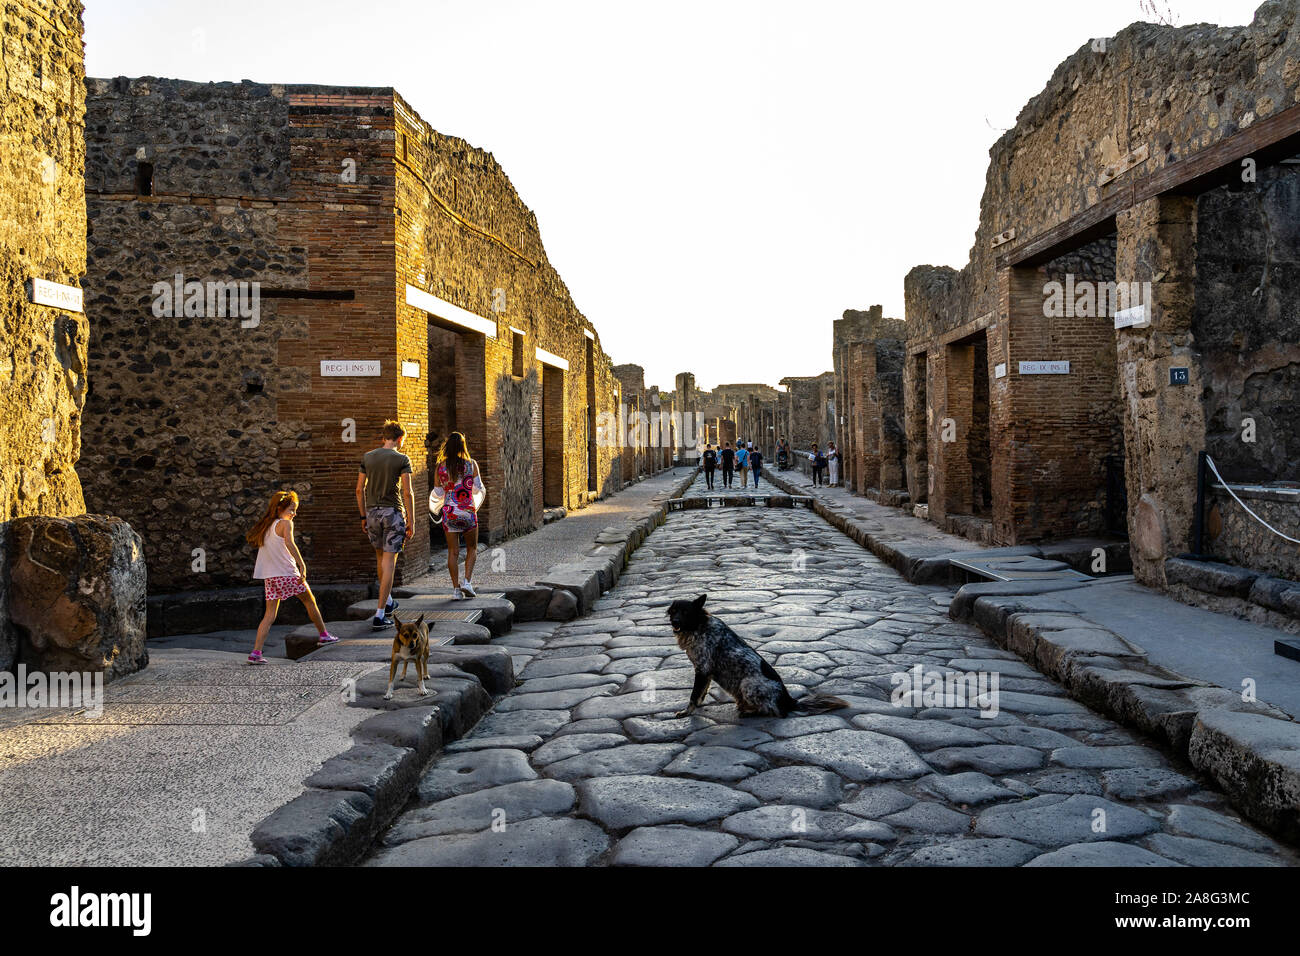 Les chiens et les visiteurs à Pompéi Via dell'Abbondanza, l'une des principales rues de pierre pavée l'ancienne ville romaine. Pompéi, Italie, Octobre 2019 Banque D'Images